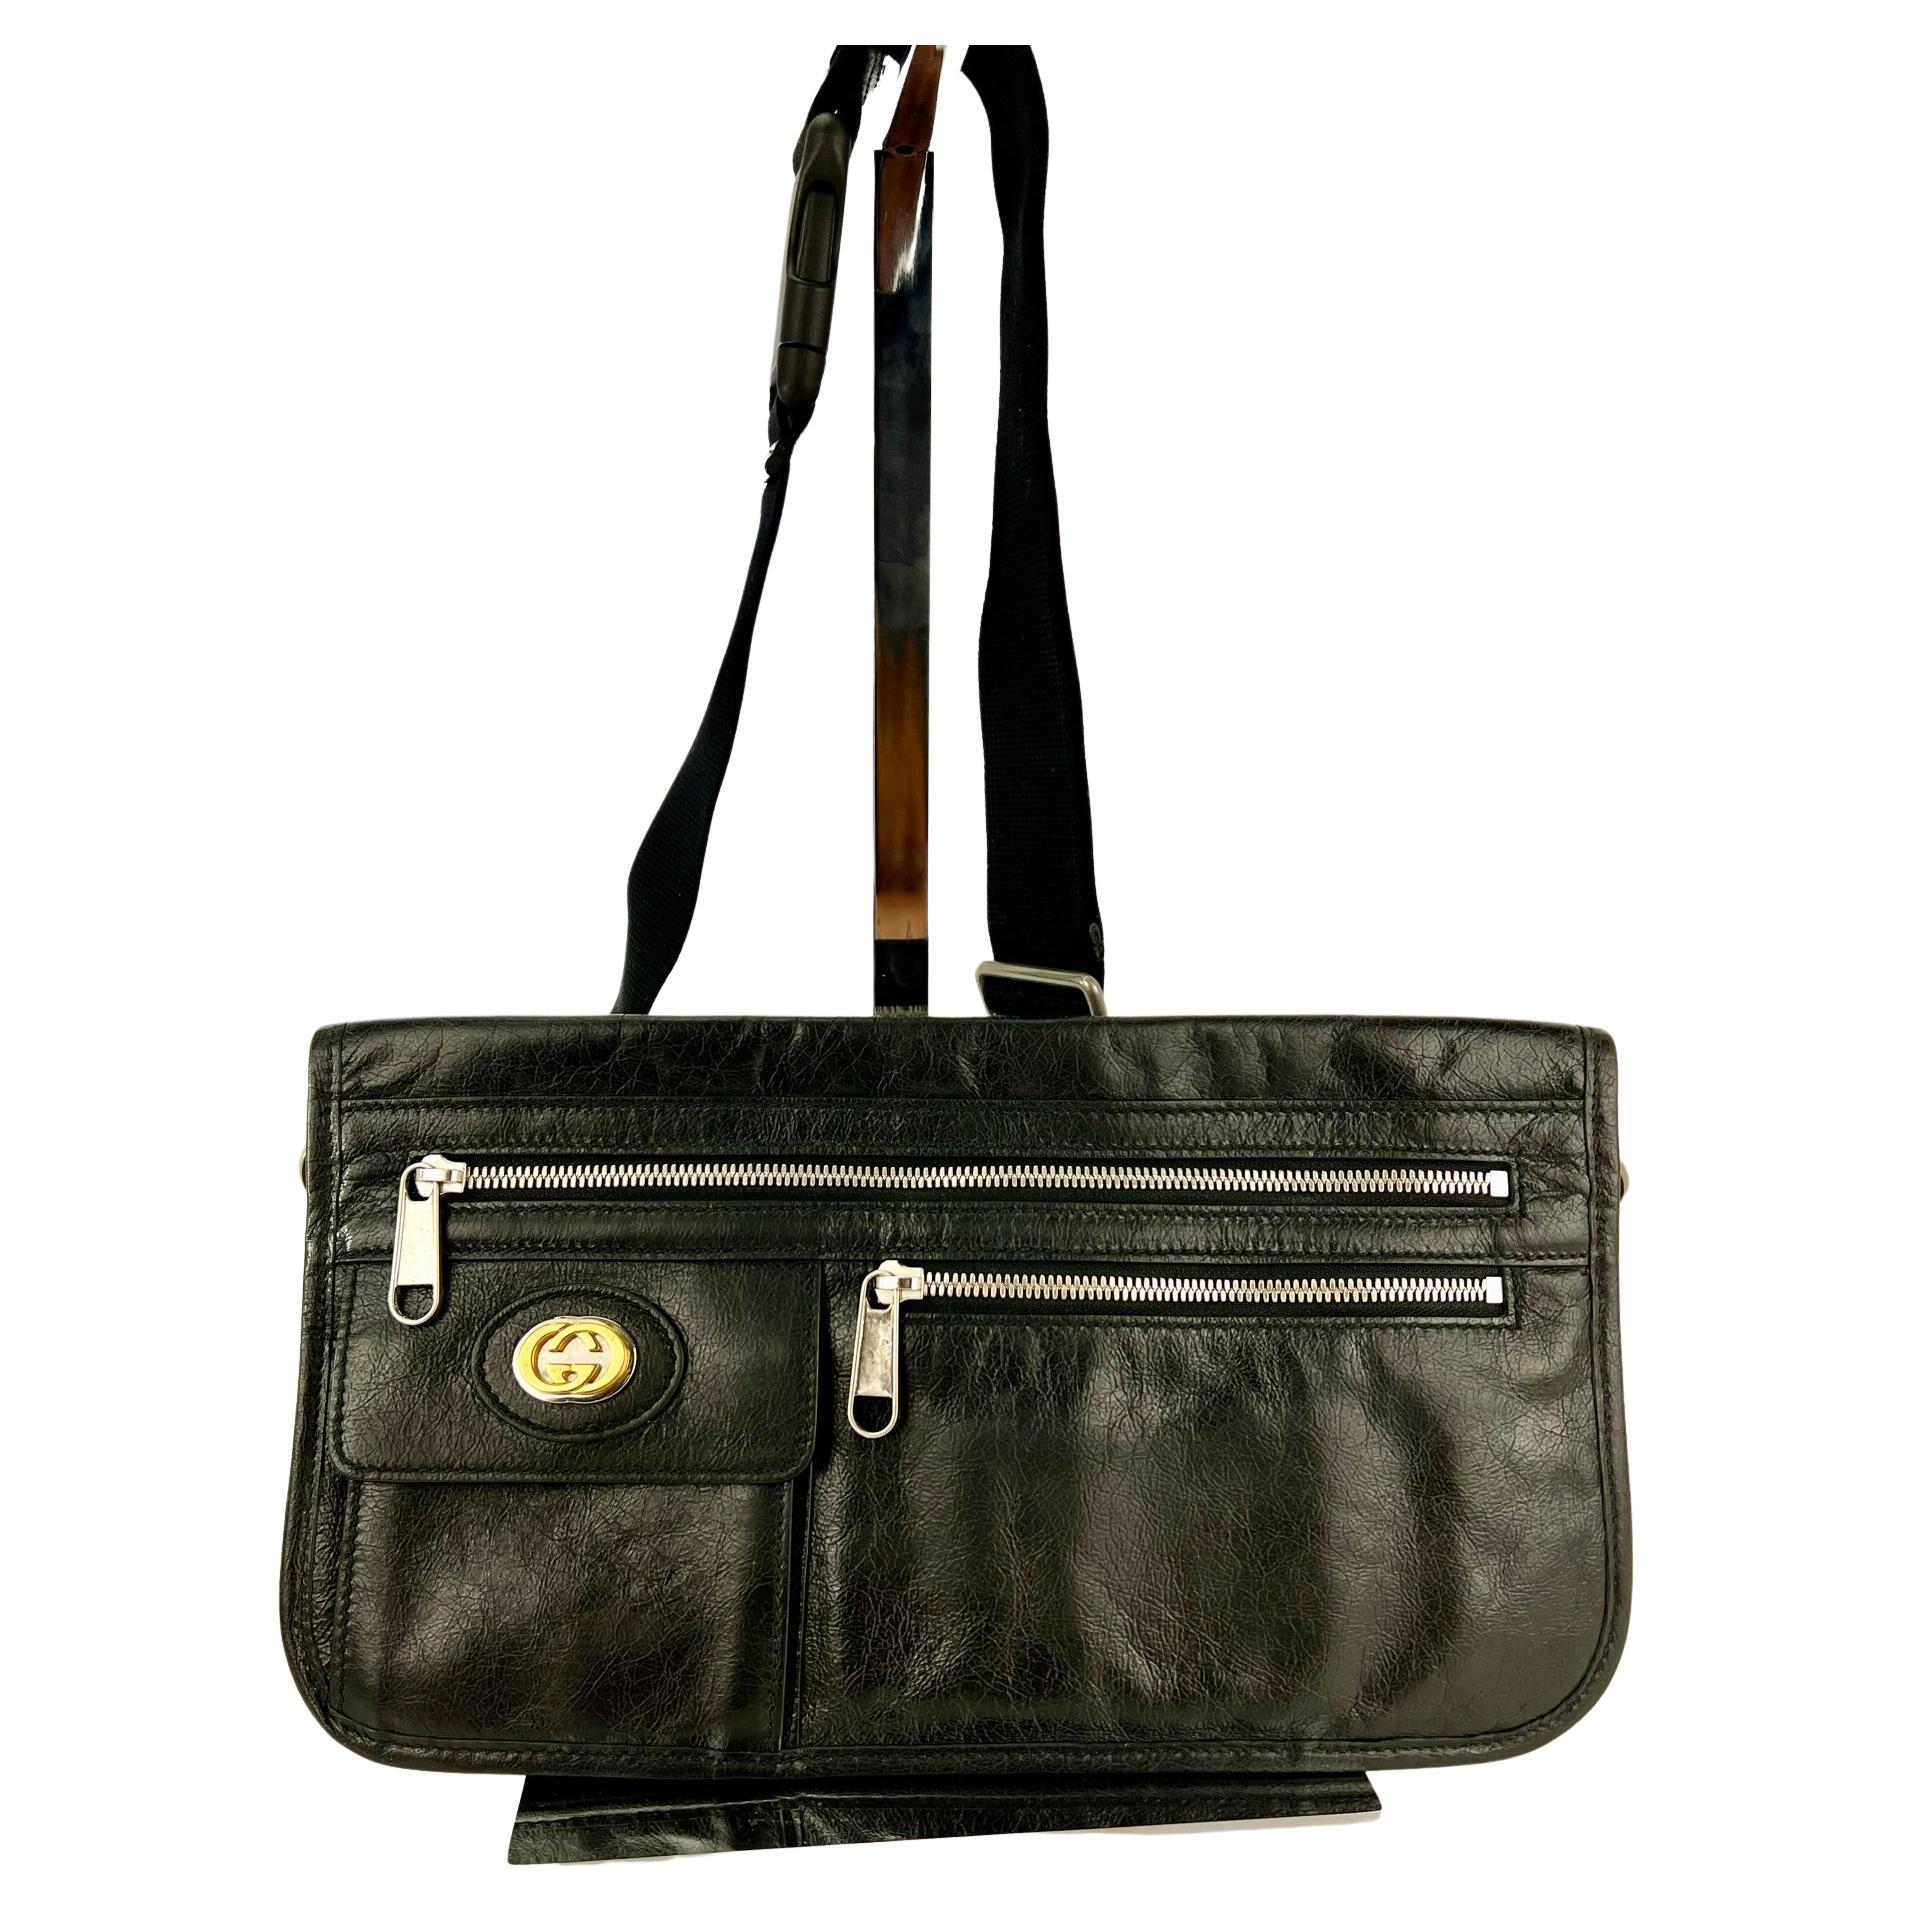 Gucci Messenger Bag Interlocking G Black Leather Crossbody Shoulder Bag